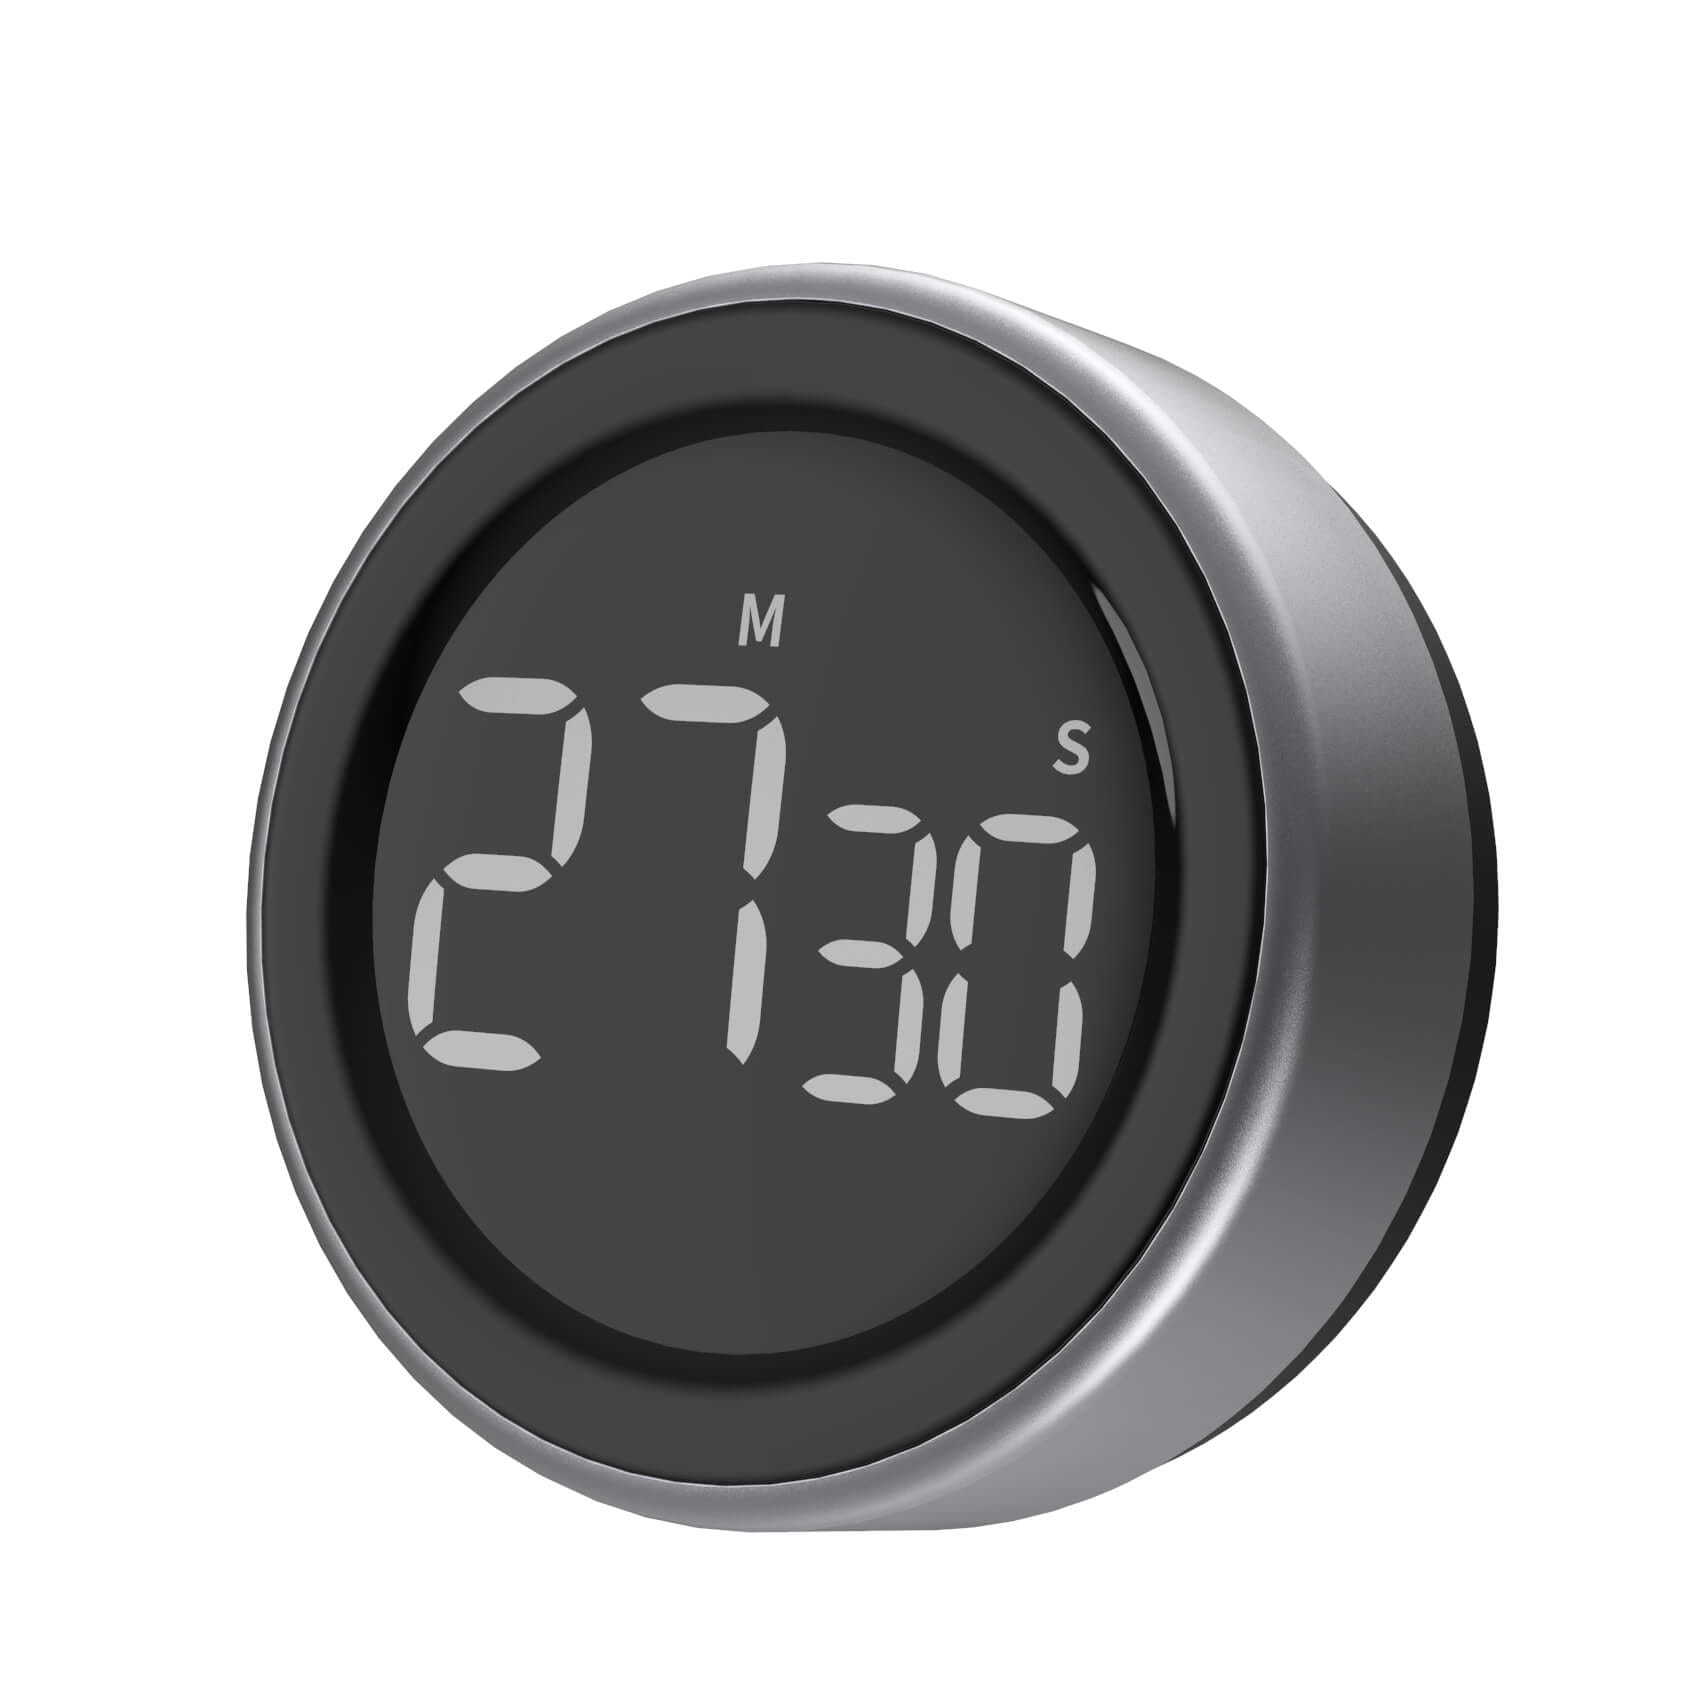 Knob Digital Kitchen Timer Magnetic LED Countdown Timer